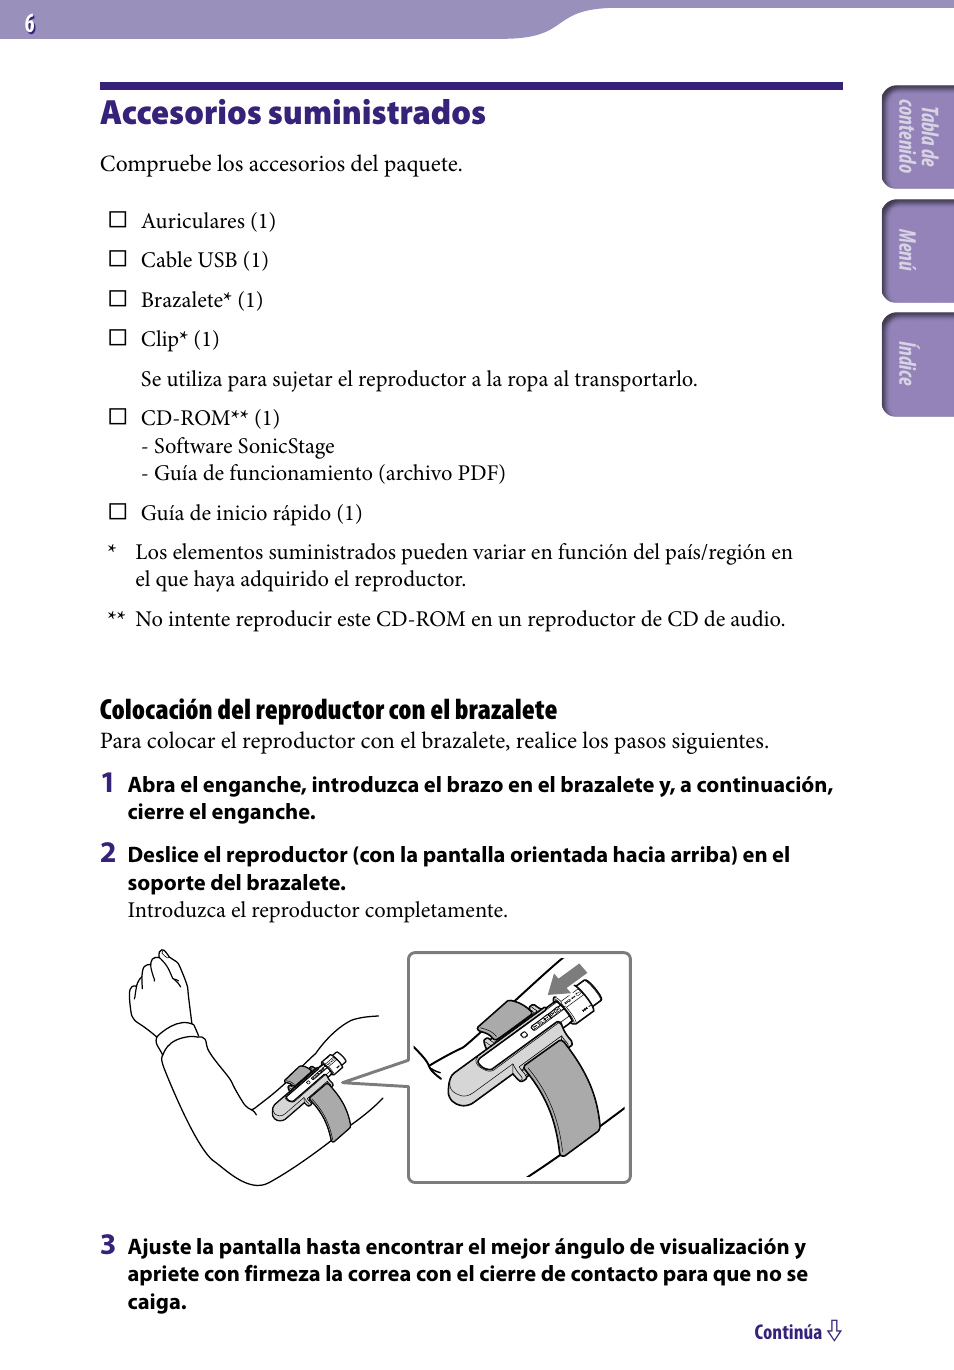 Accesorios suministrados, Colocación del reproductor con el brazalete | Sony NW-S202 Manual del usuario | Página 6 / 92